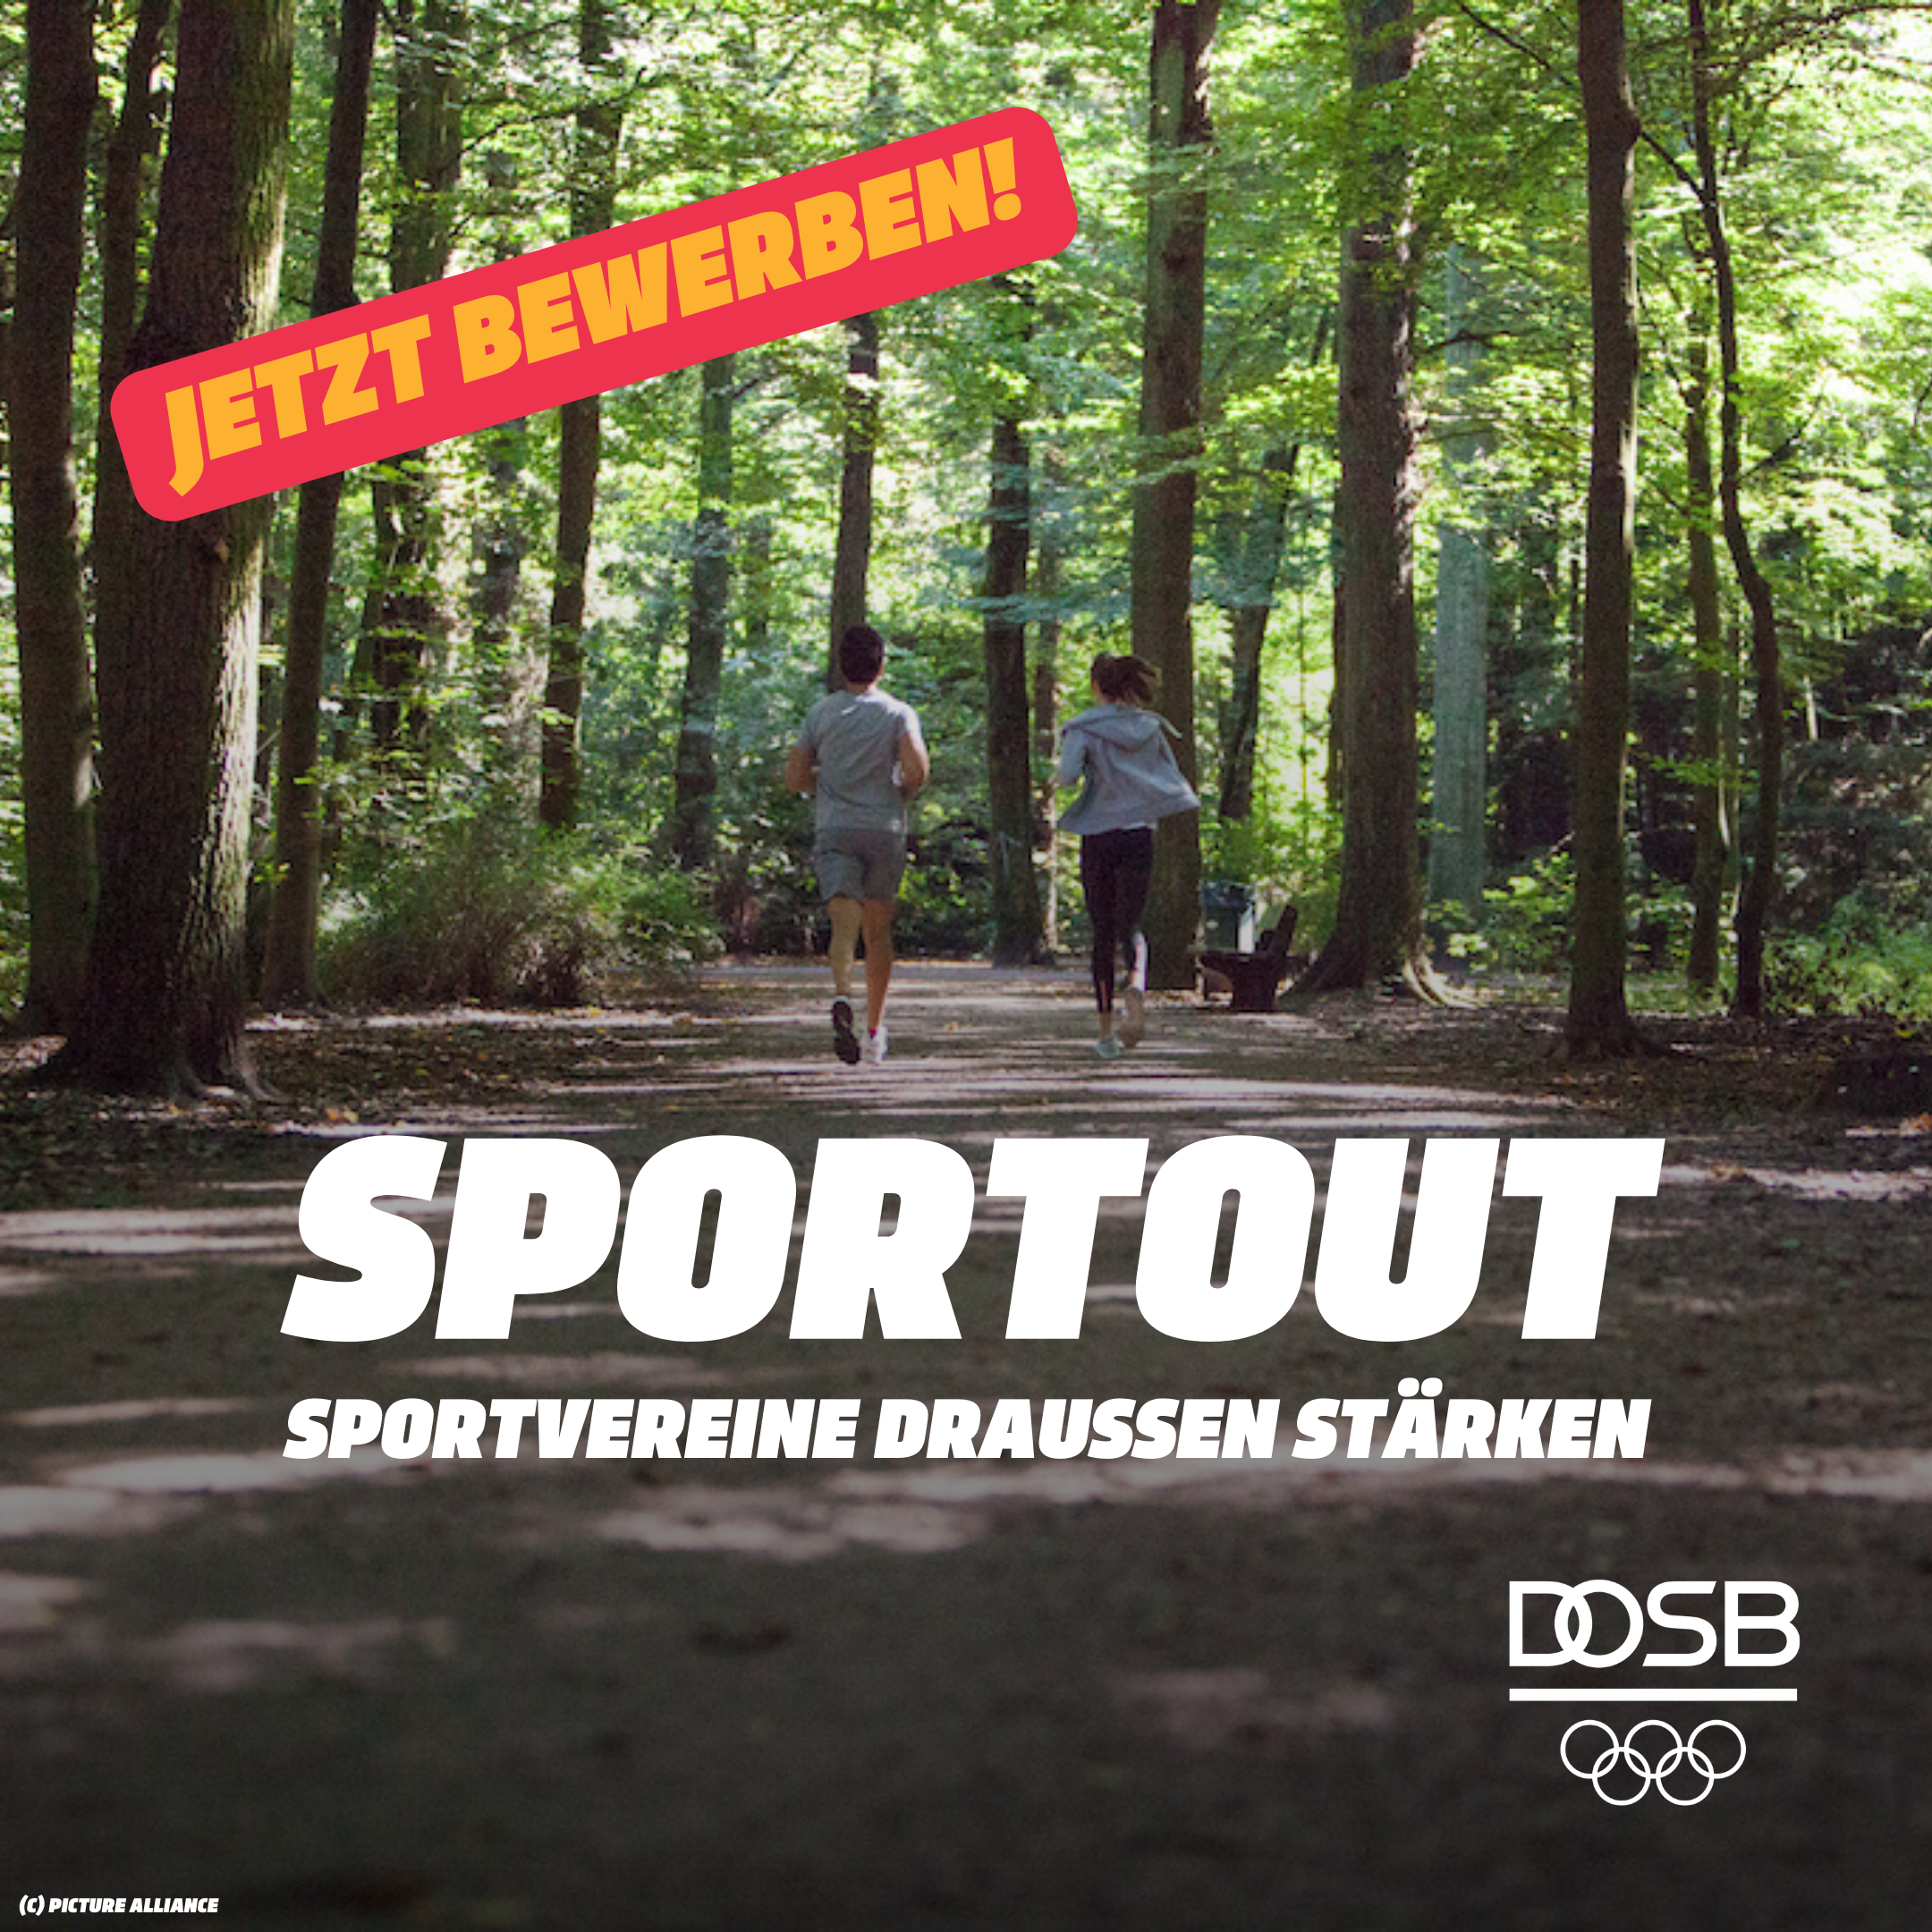 Projekt SPORTOUT: Sportvereine draußen stark machen – Jetzt bewerben und Fördergelder erhalten!